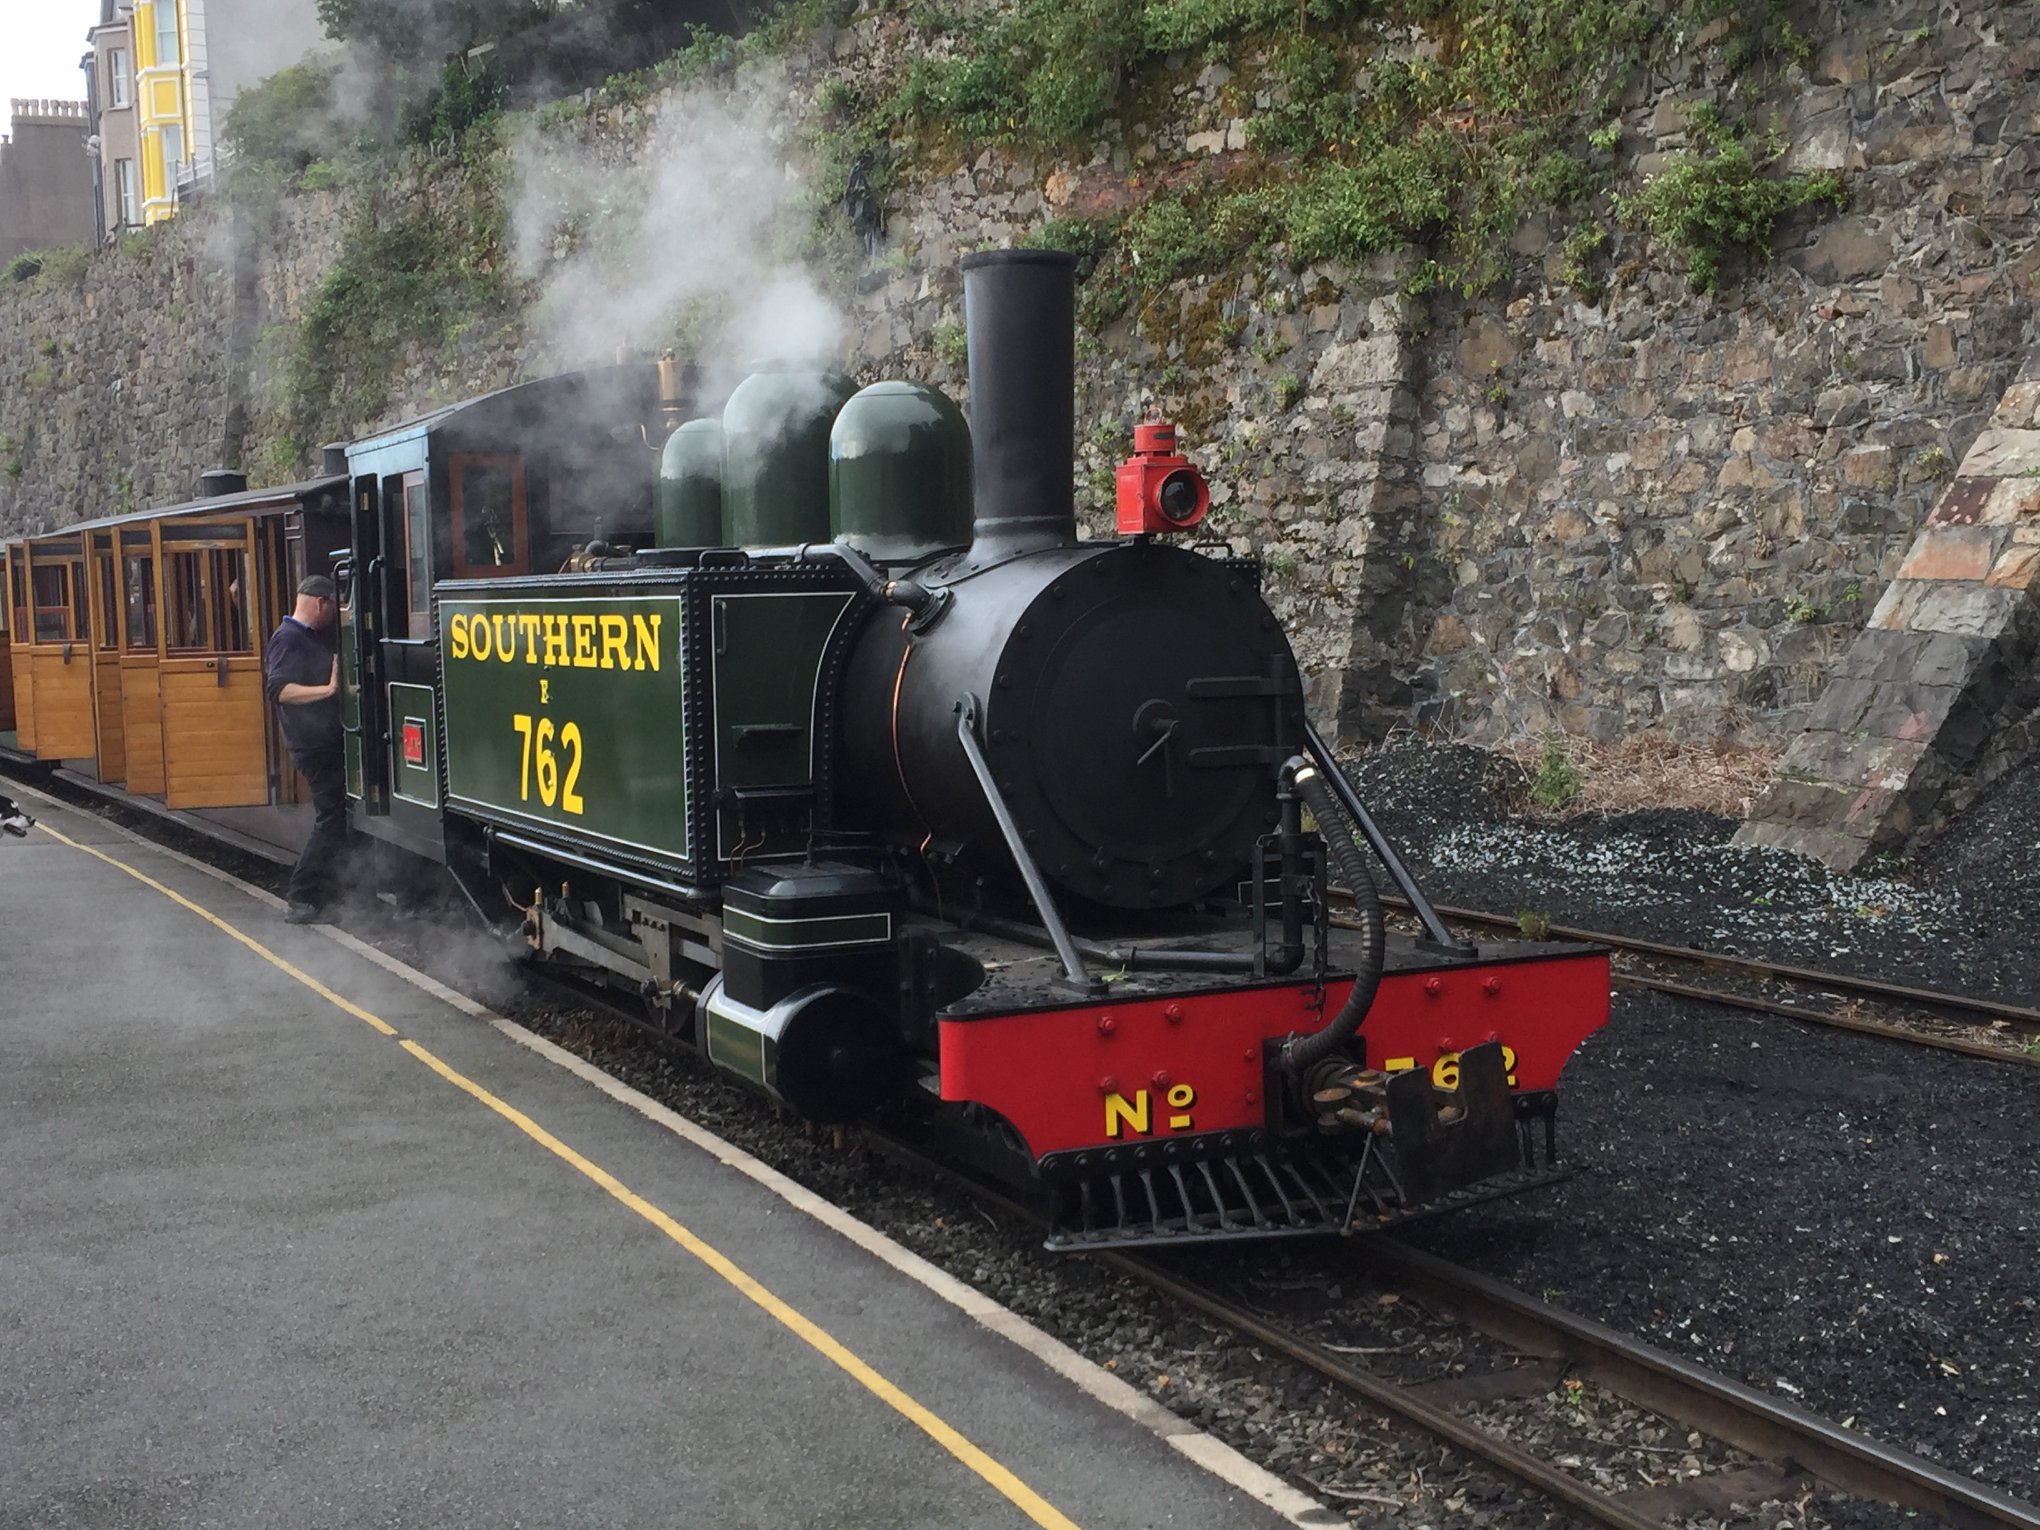 LYN and train at Caernarfon, 14 September 2018